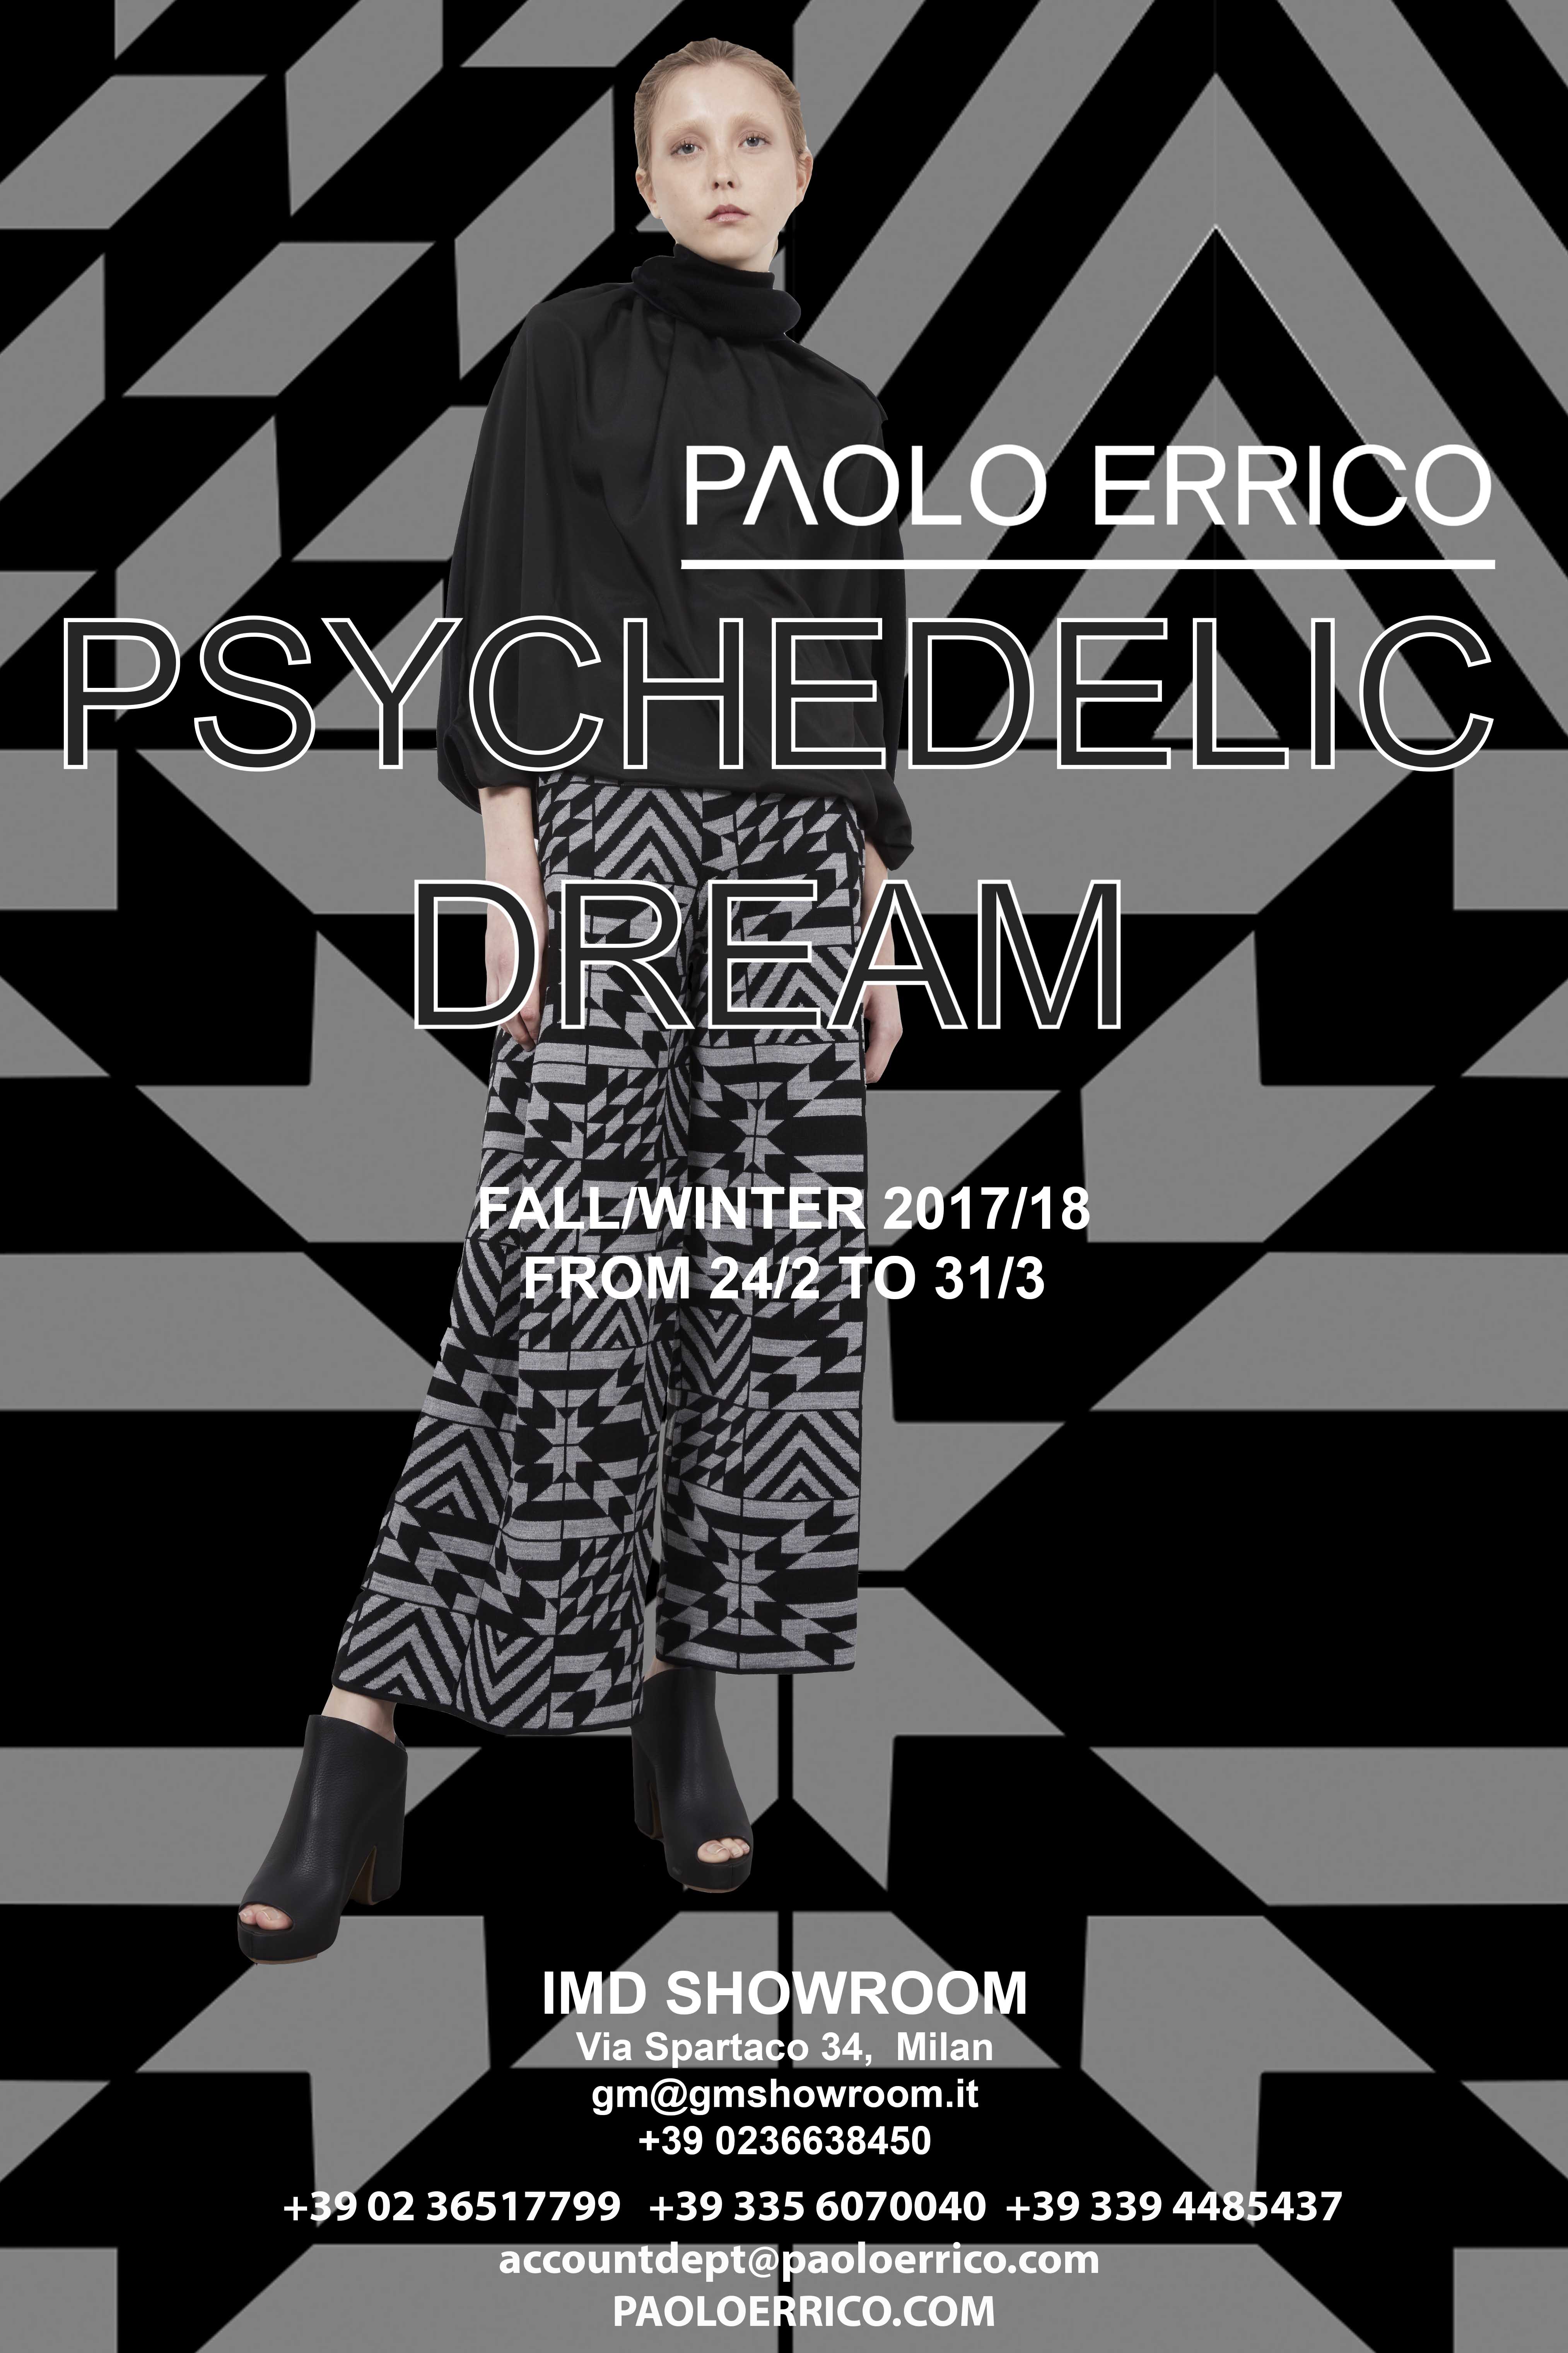 PAOLO ERRICO fw1718 invitation